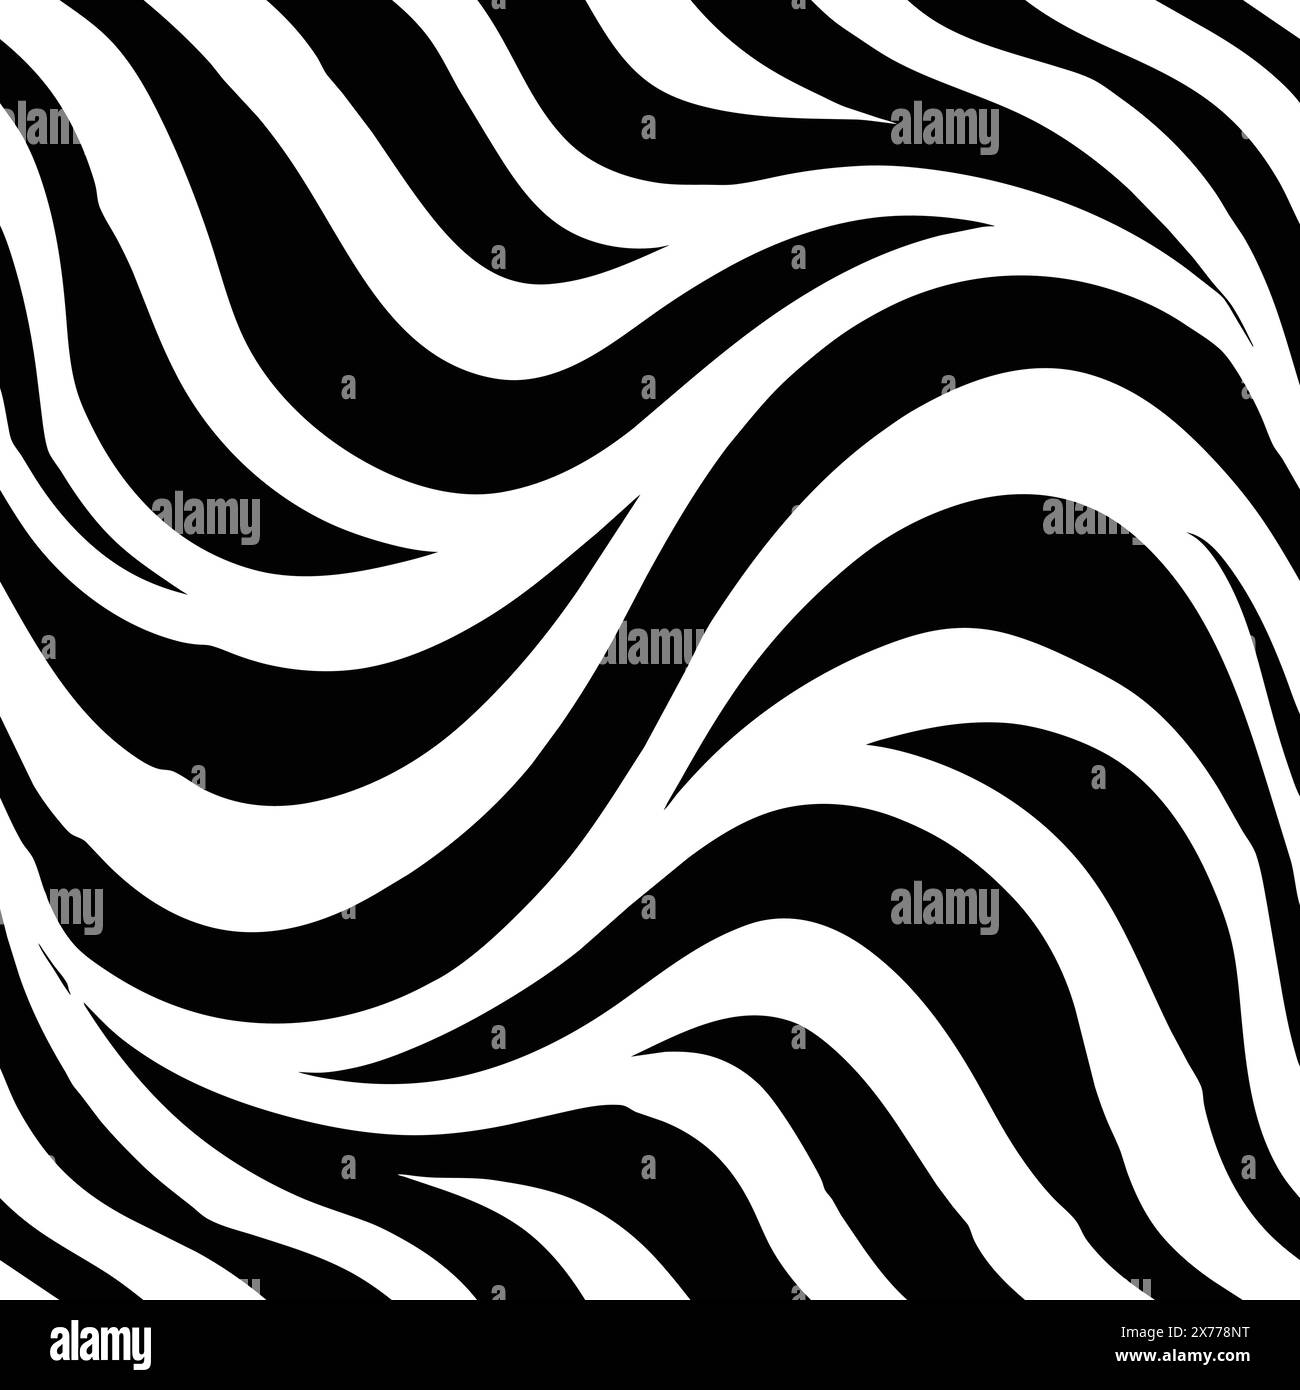 Ein Zebramuster mit schwarz-weißen Streifen. Das Muster ist sehr kompliziert und hat viele Details. Die Streifen sind sehr dicht beieinander, Creati Stock Vektor